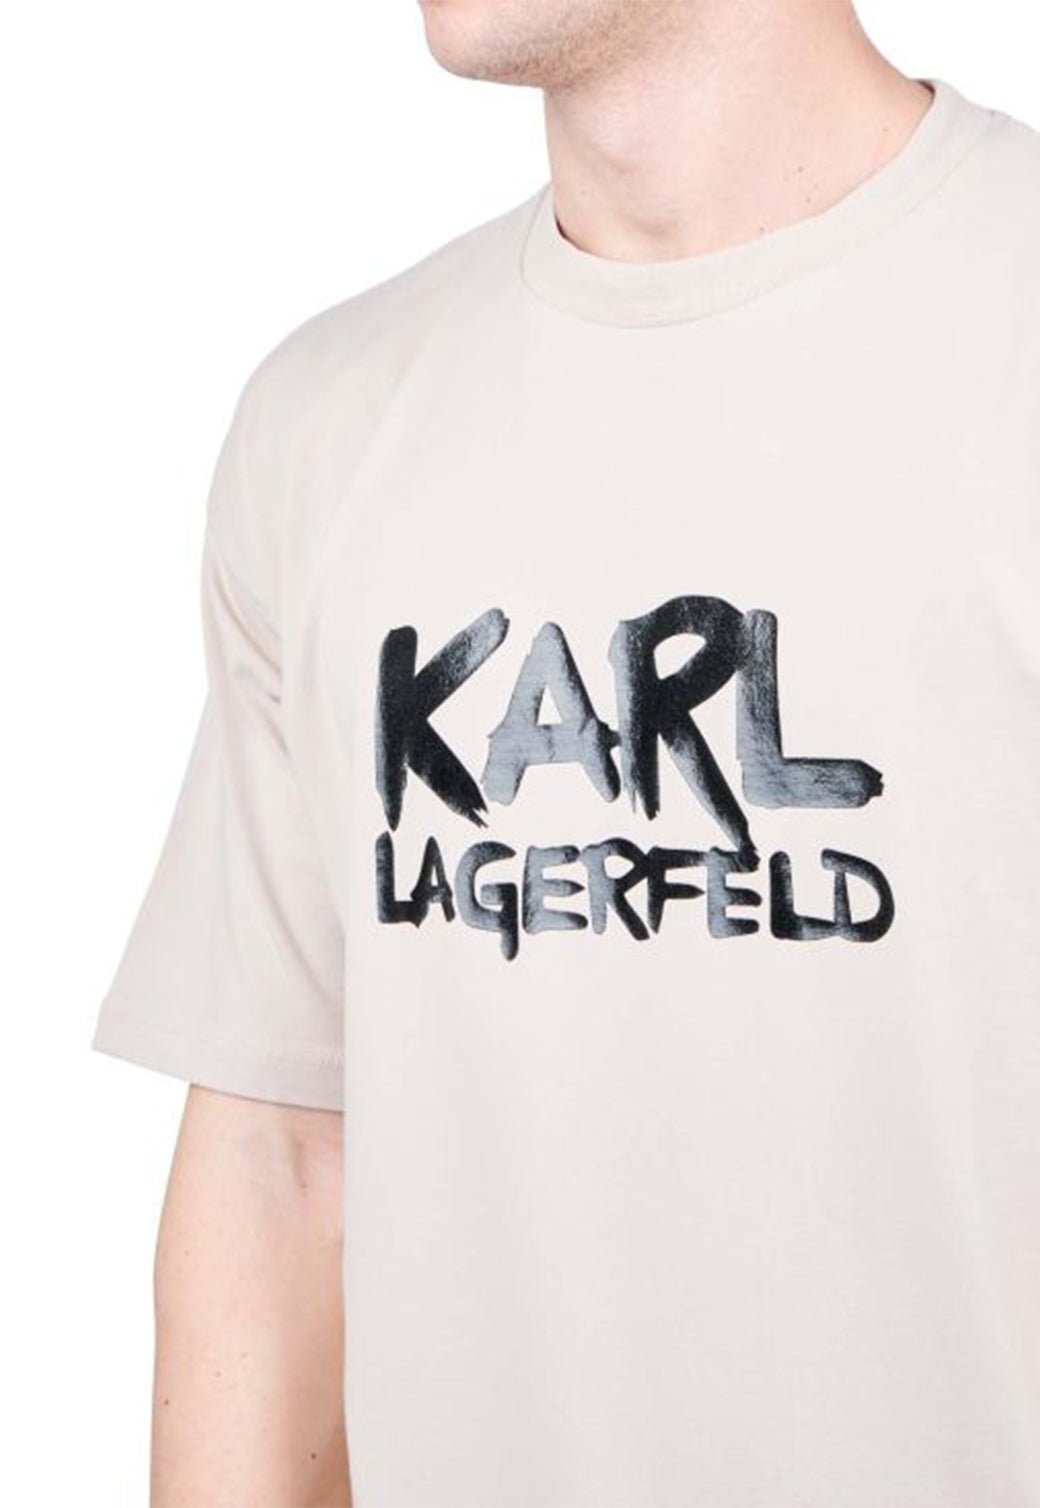 טי שירט קצרה Crewneck לגברים - Karl Lagerfeld